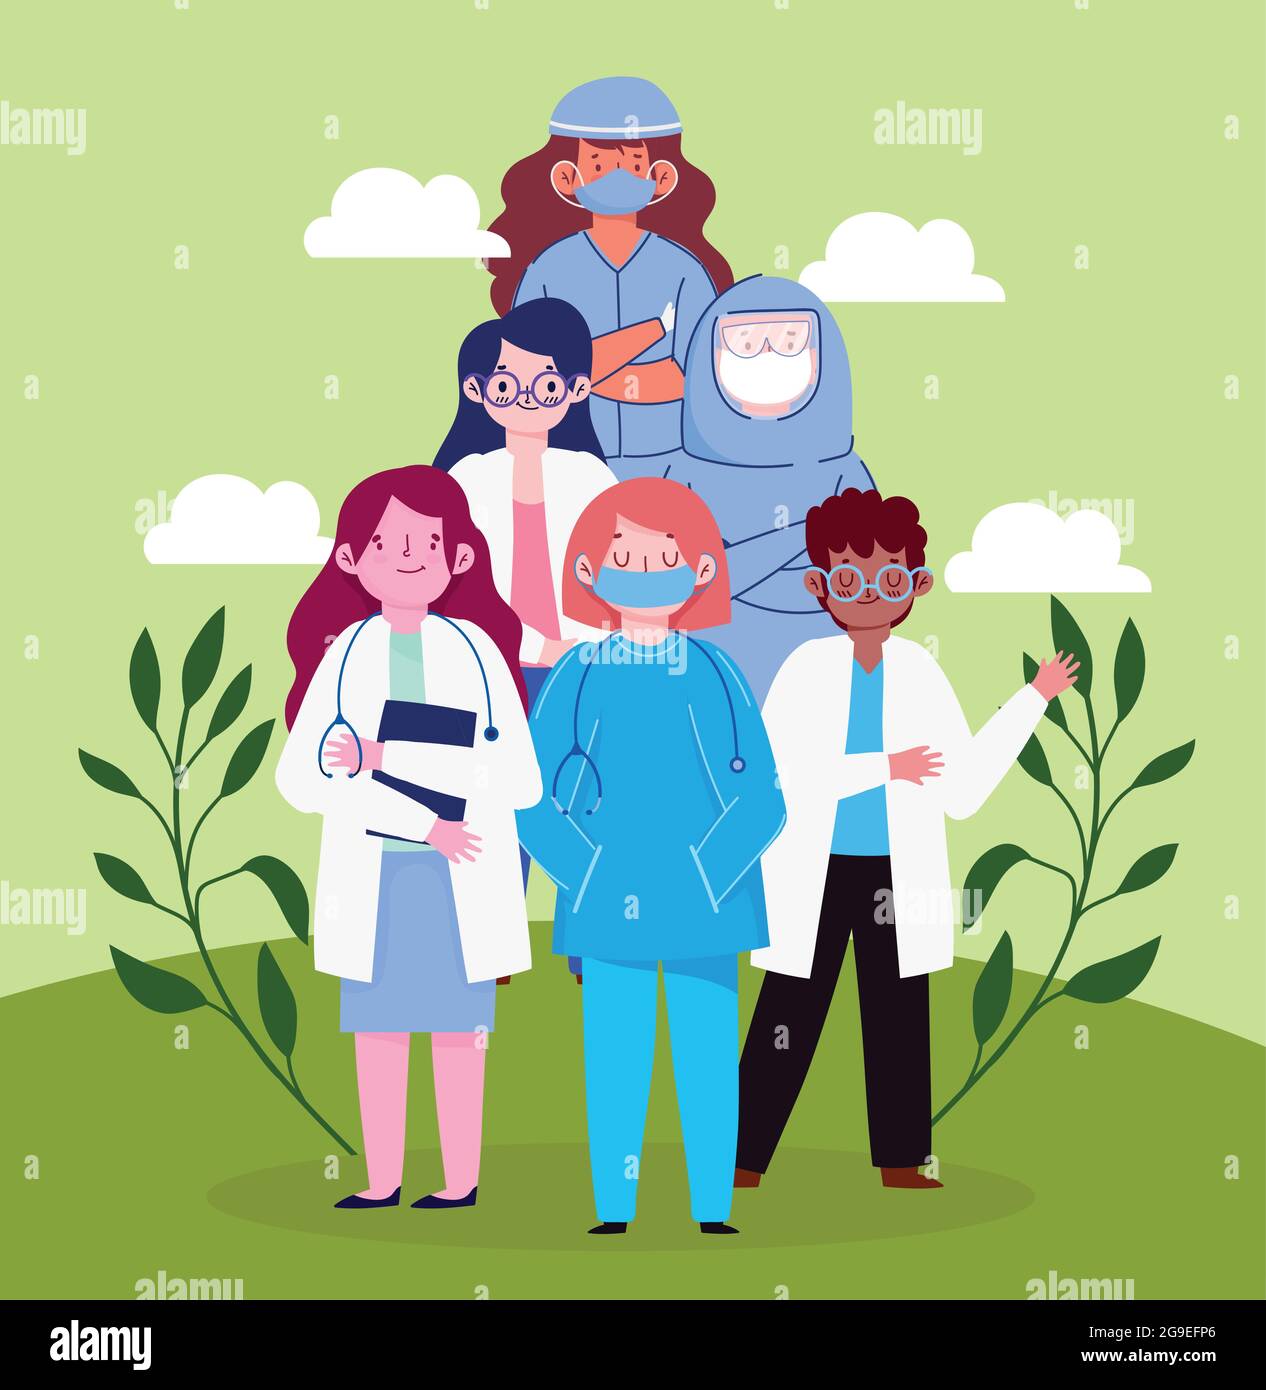 dottori e infermieri di cartoni animati Immagine e Vettoriale - Alamy